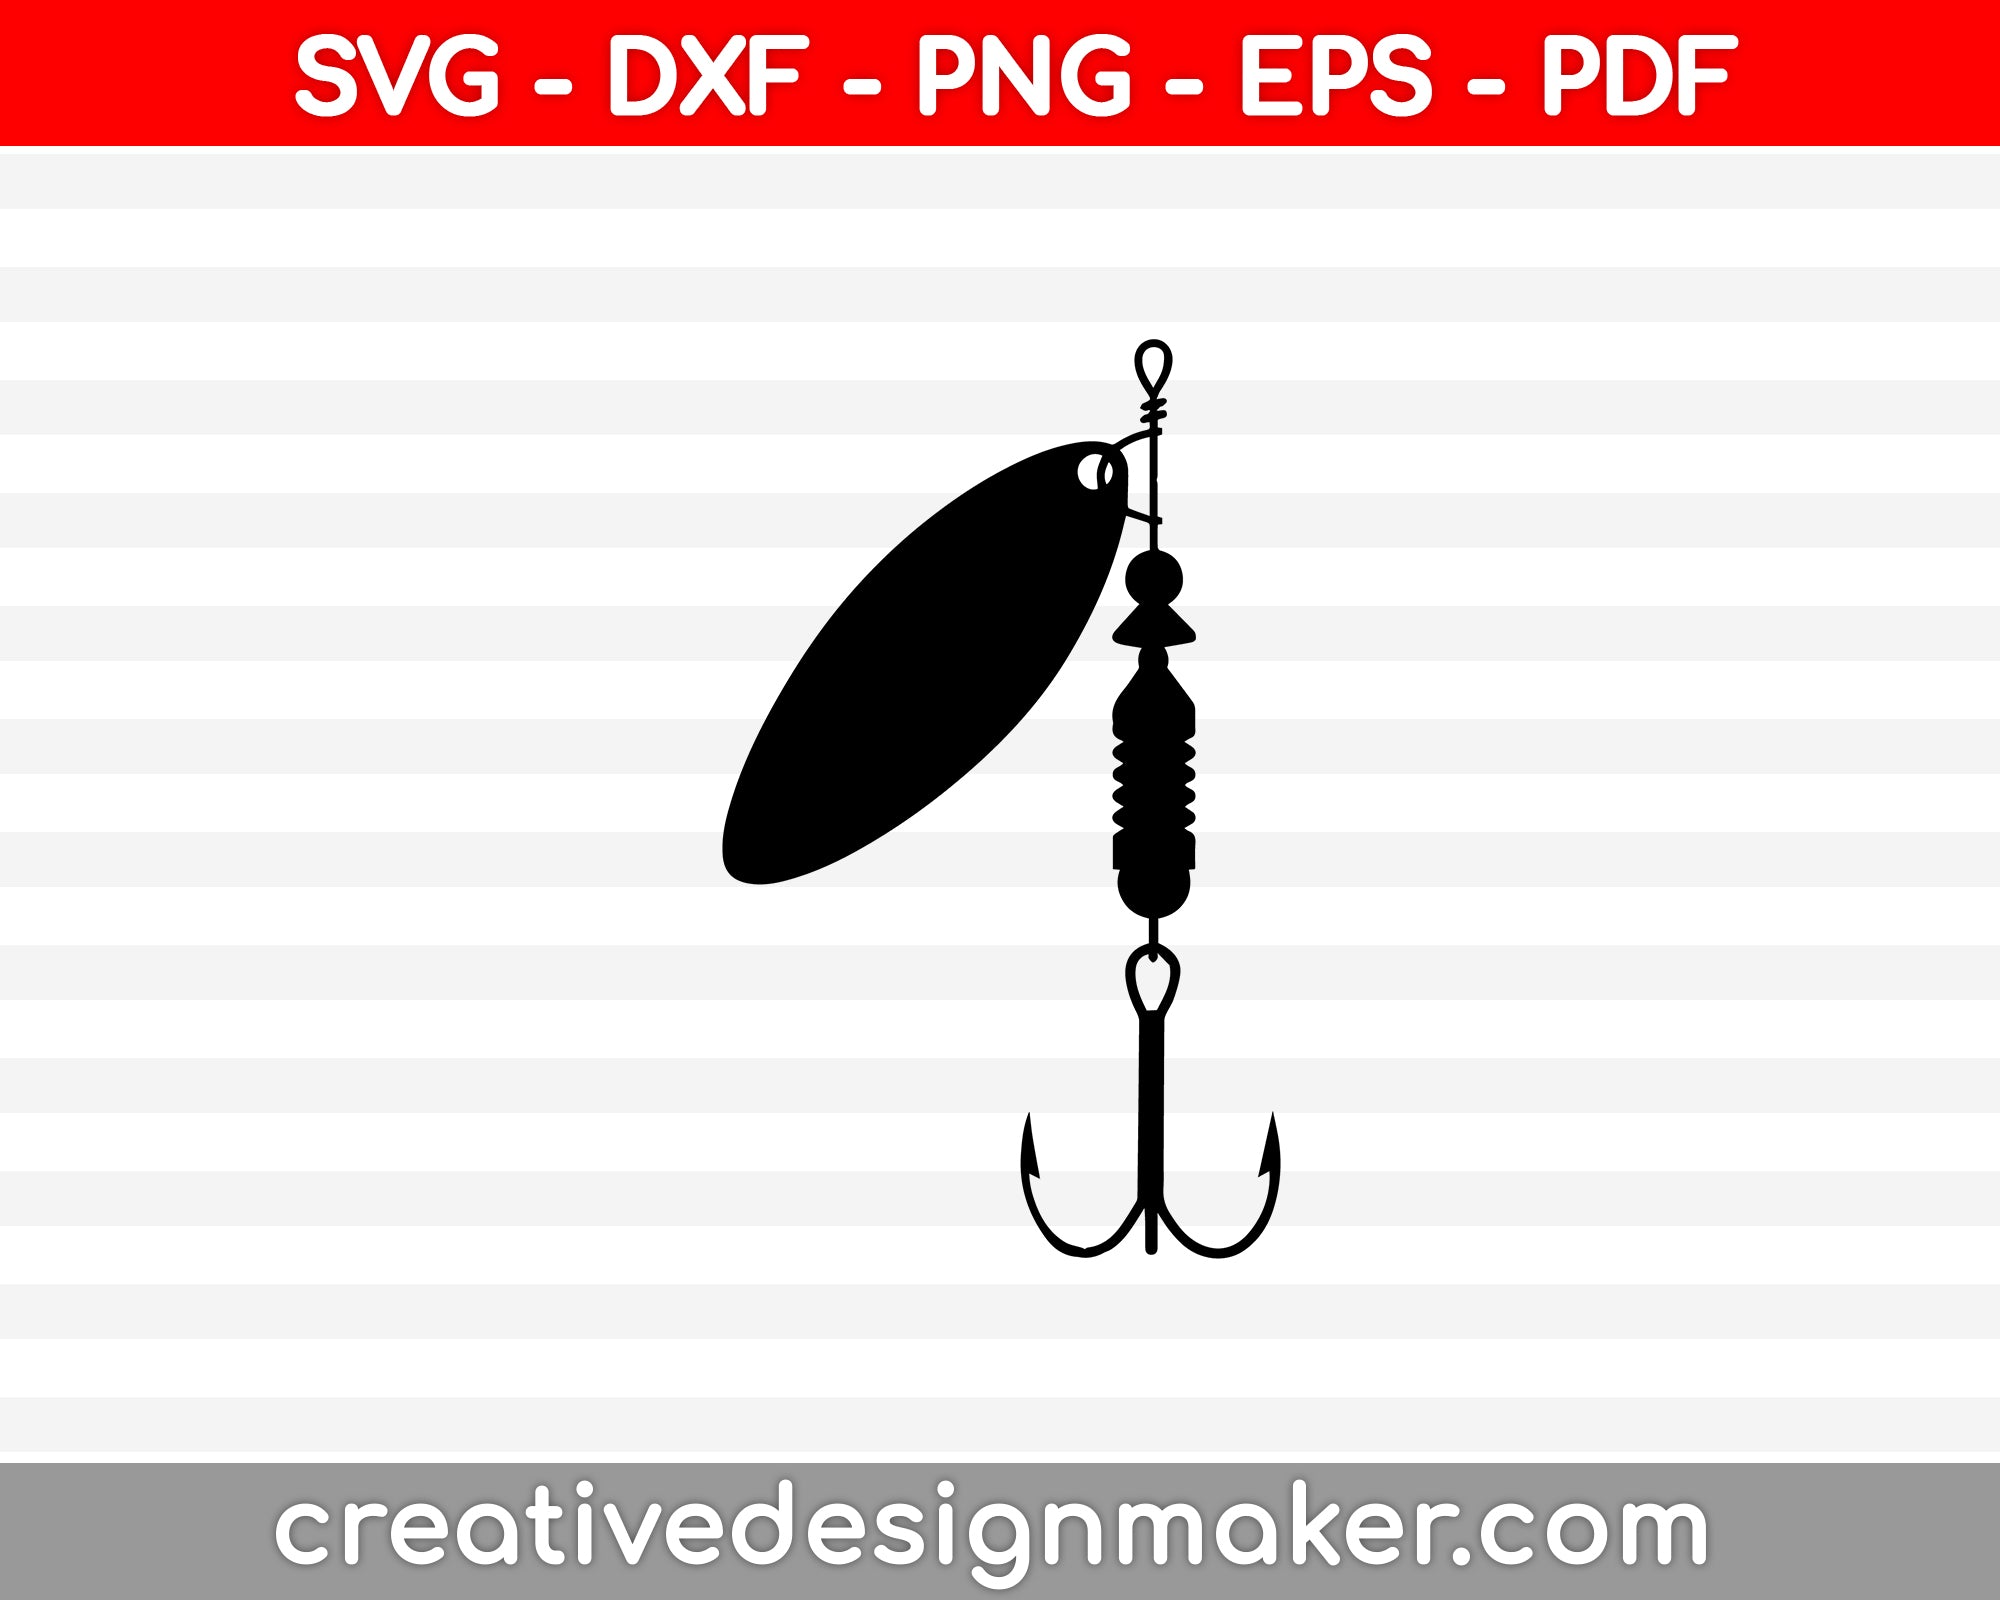 https://creativedesignmaker.com/cdn/shop/products/1_e5bacaf8-b8c9-4bd6-8a6d-214c1ed8d077_1024x1024@2x.jpg?v=1586273012